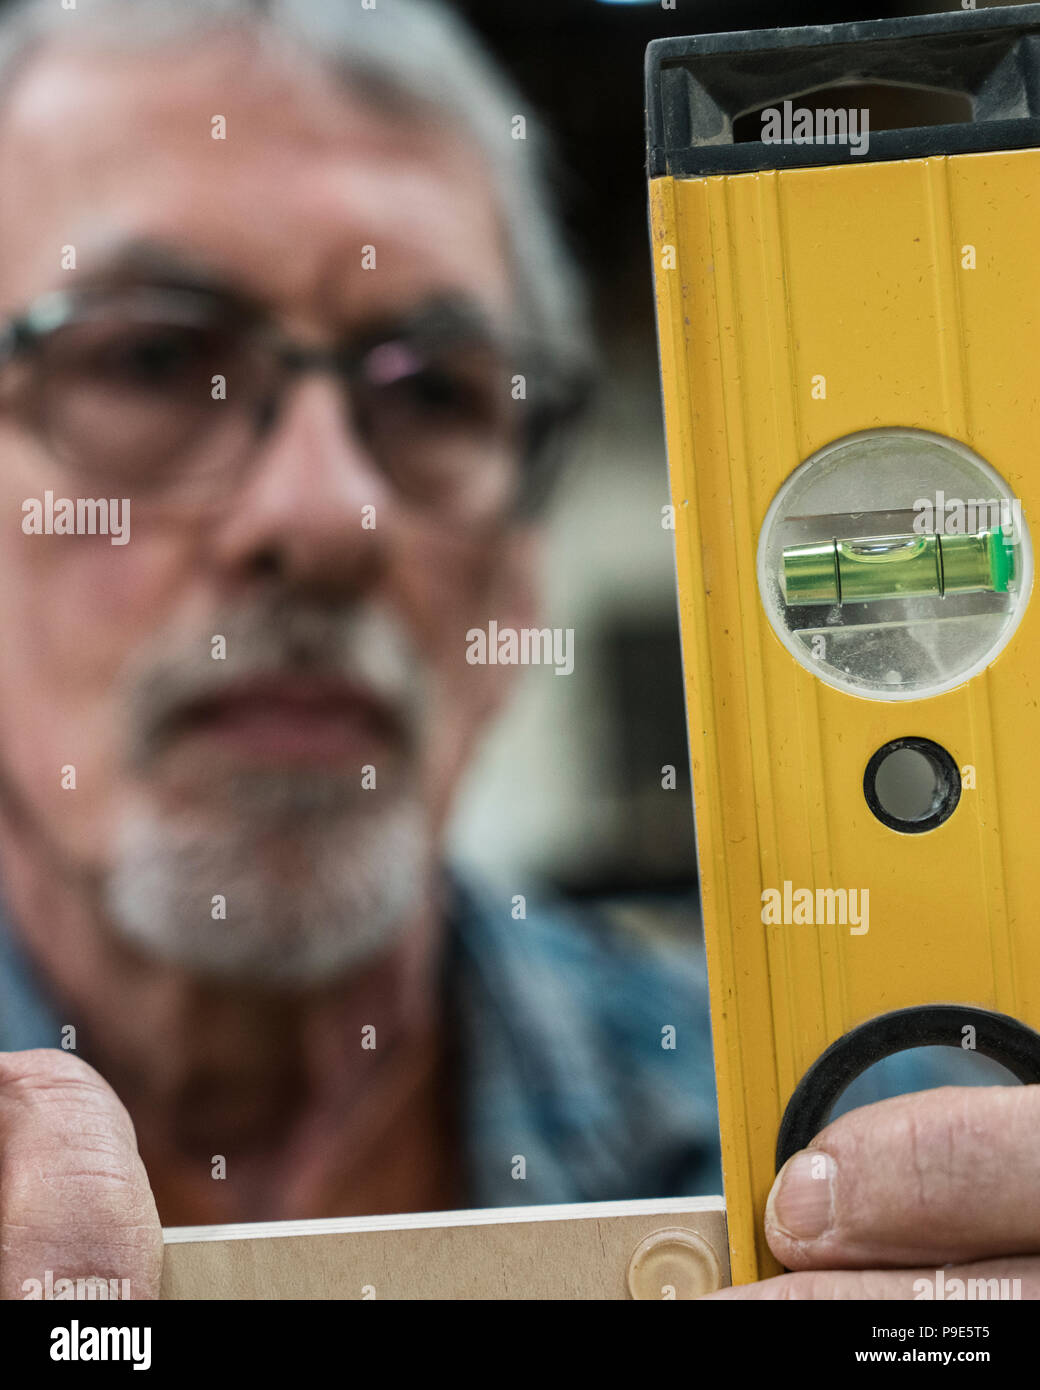 Ein älterer Mann mit Brille und Bart in einem holzarbeiter Shop, mit Hilfe einer Wasserwaage prüfen seine Arbeit. Stockfoto